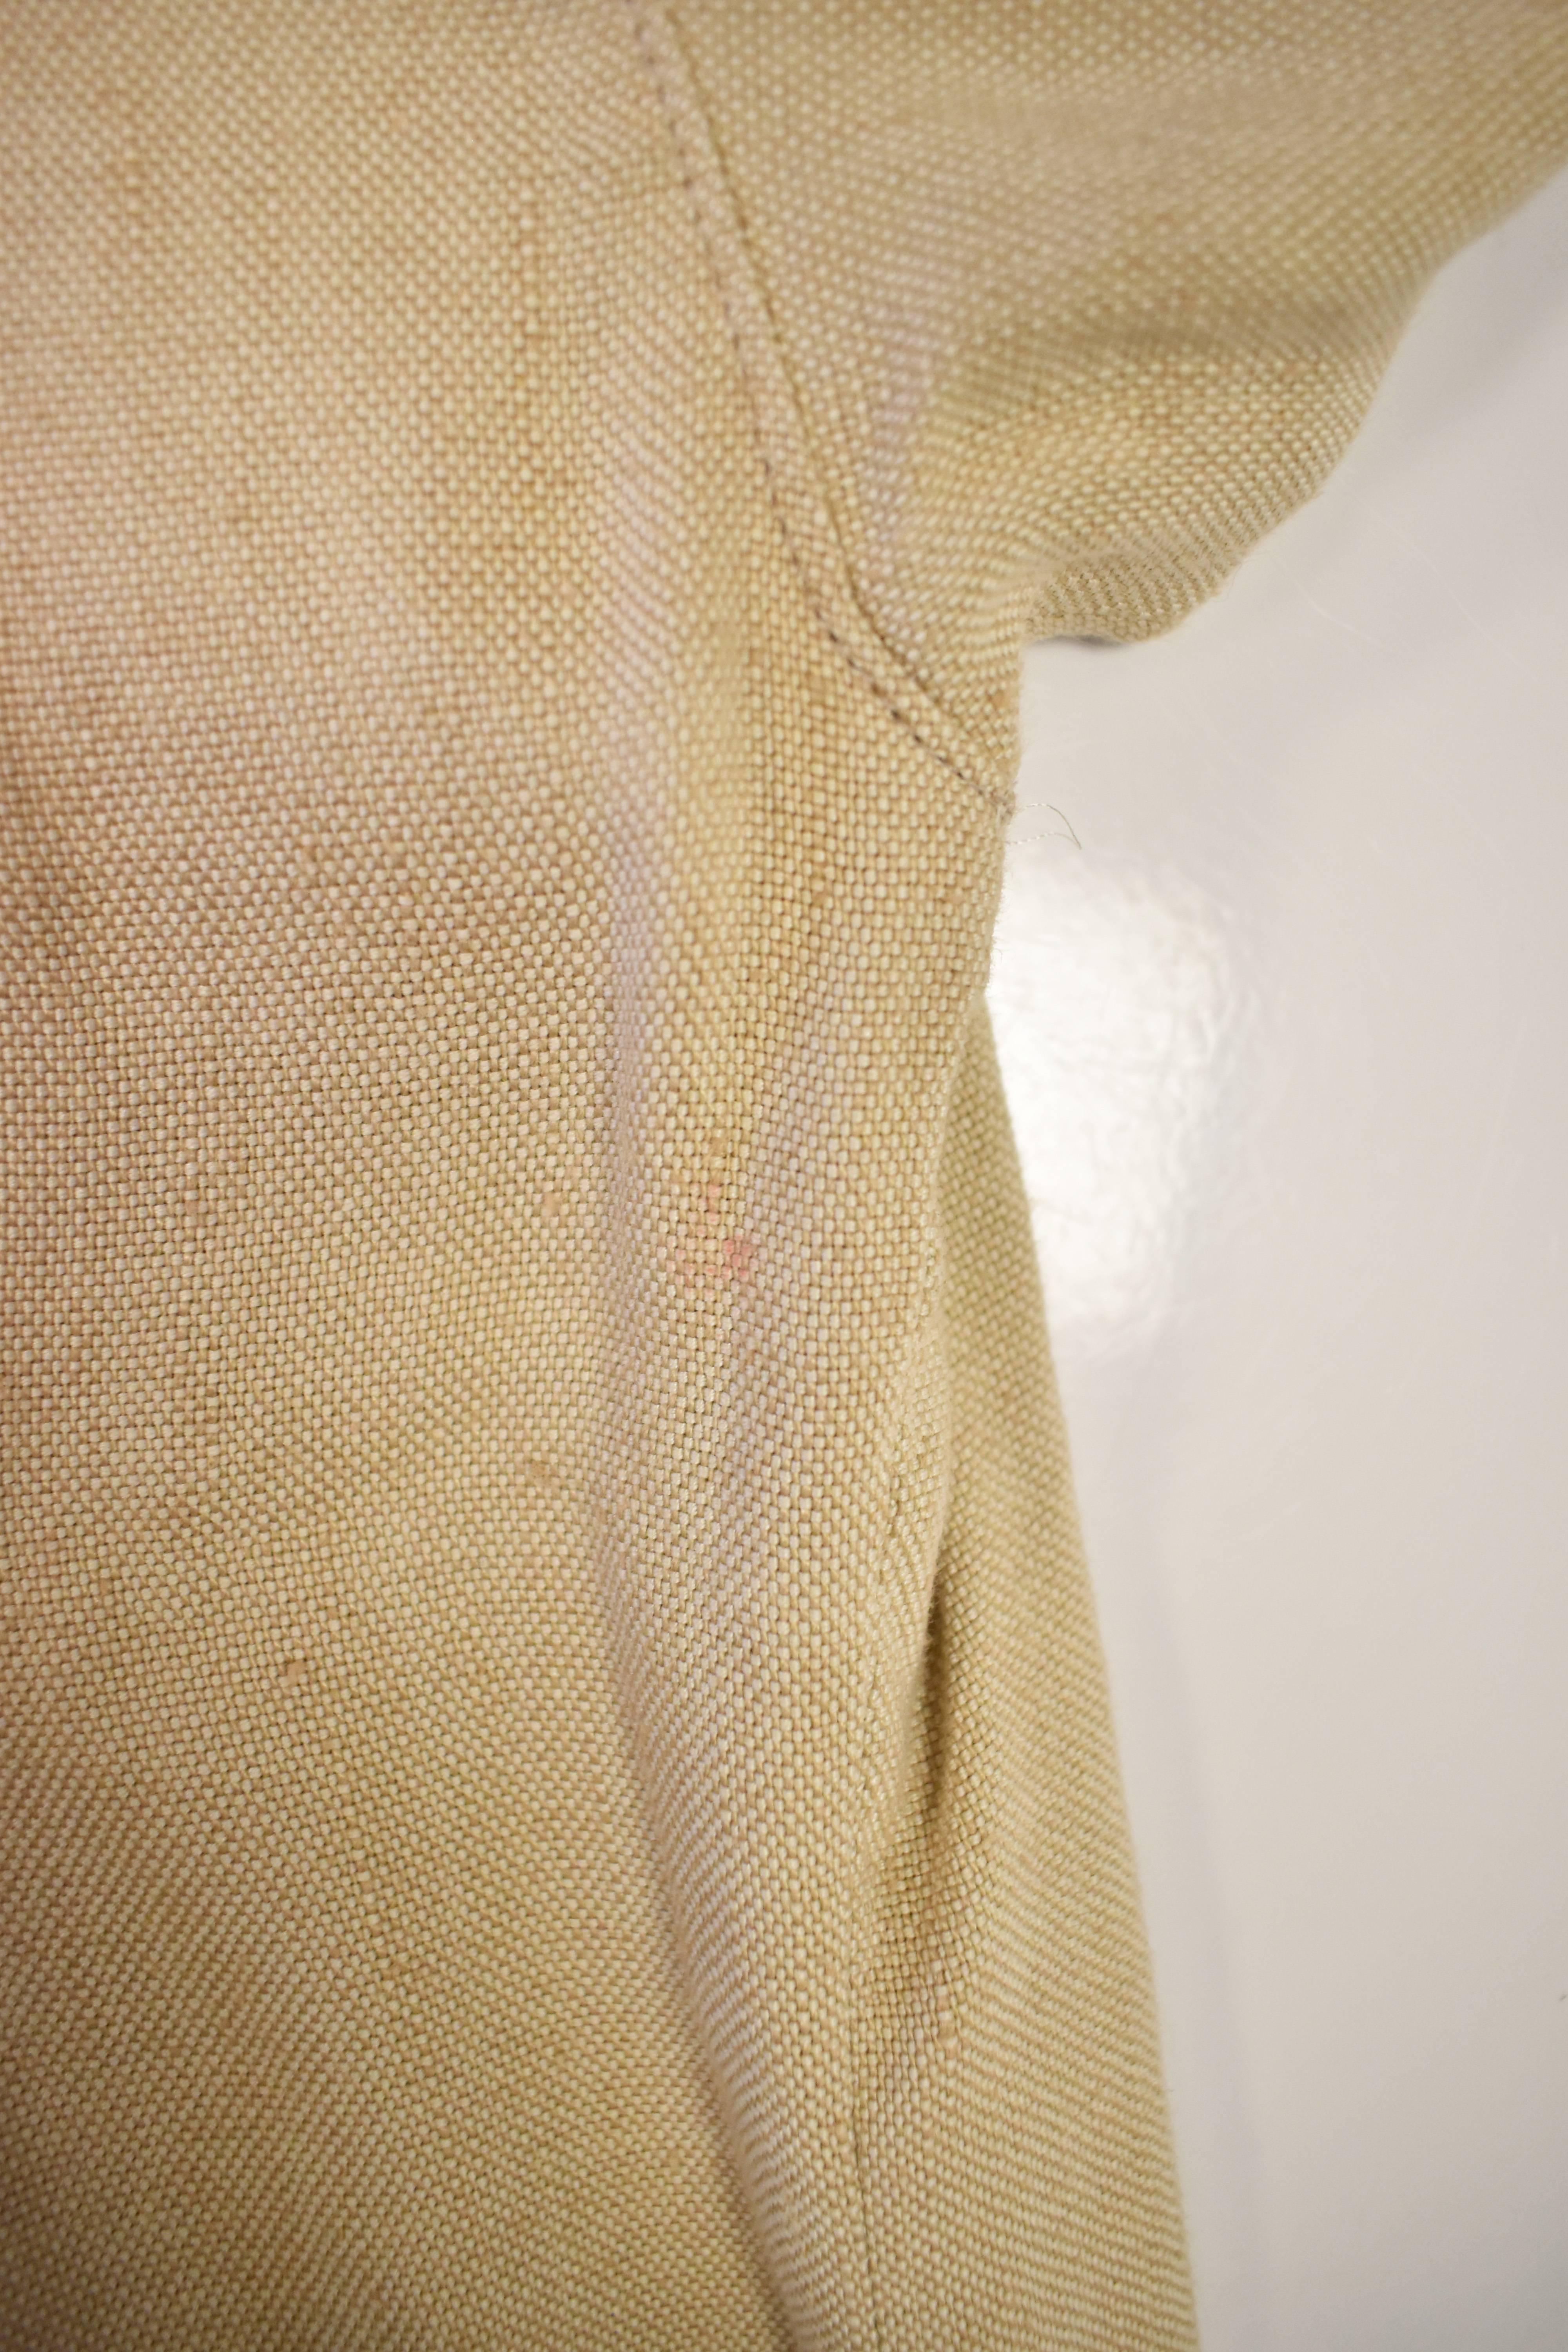 Chanel Beige Linen and Silk Shirt Dress 3